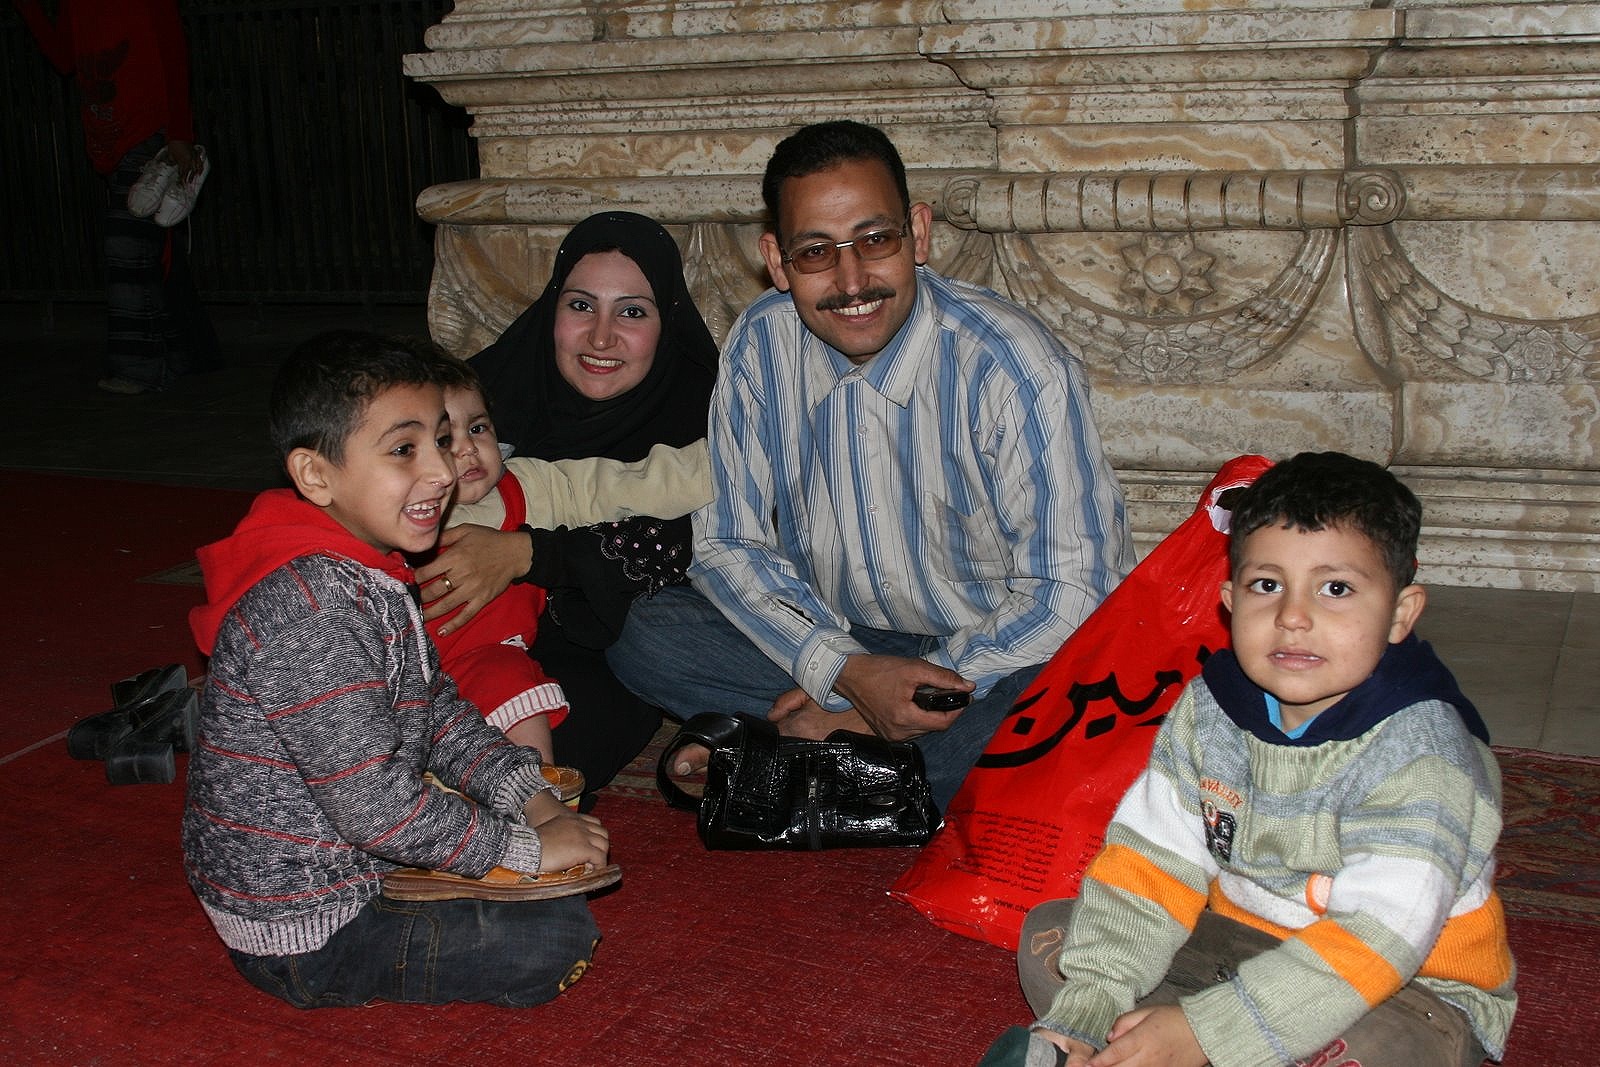 Family relaxing inside the Citadel, Cairo, Egypt